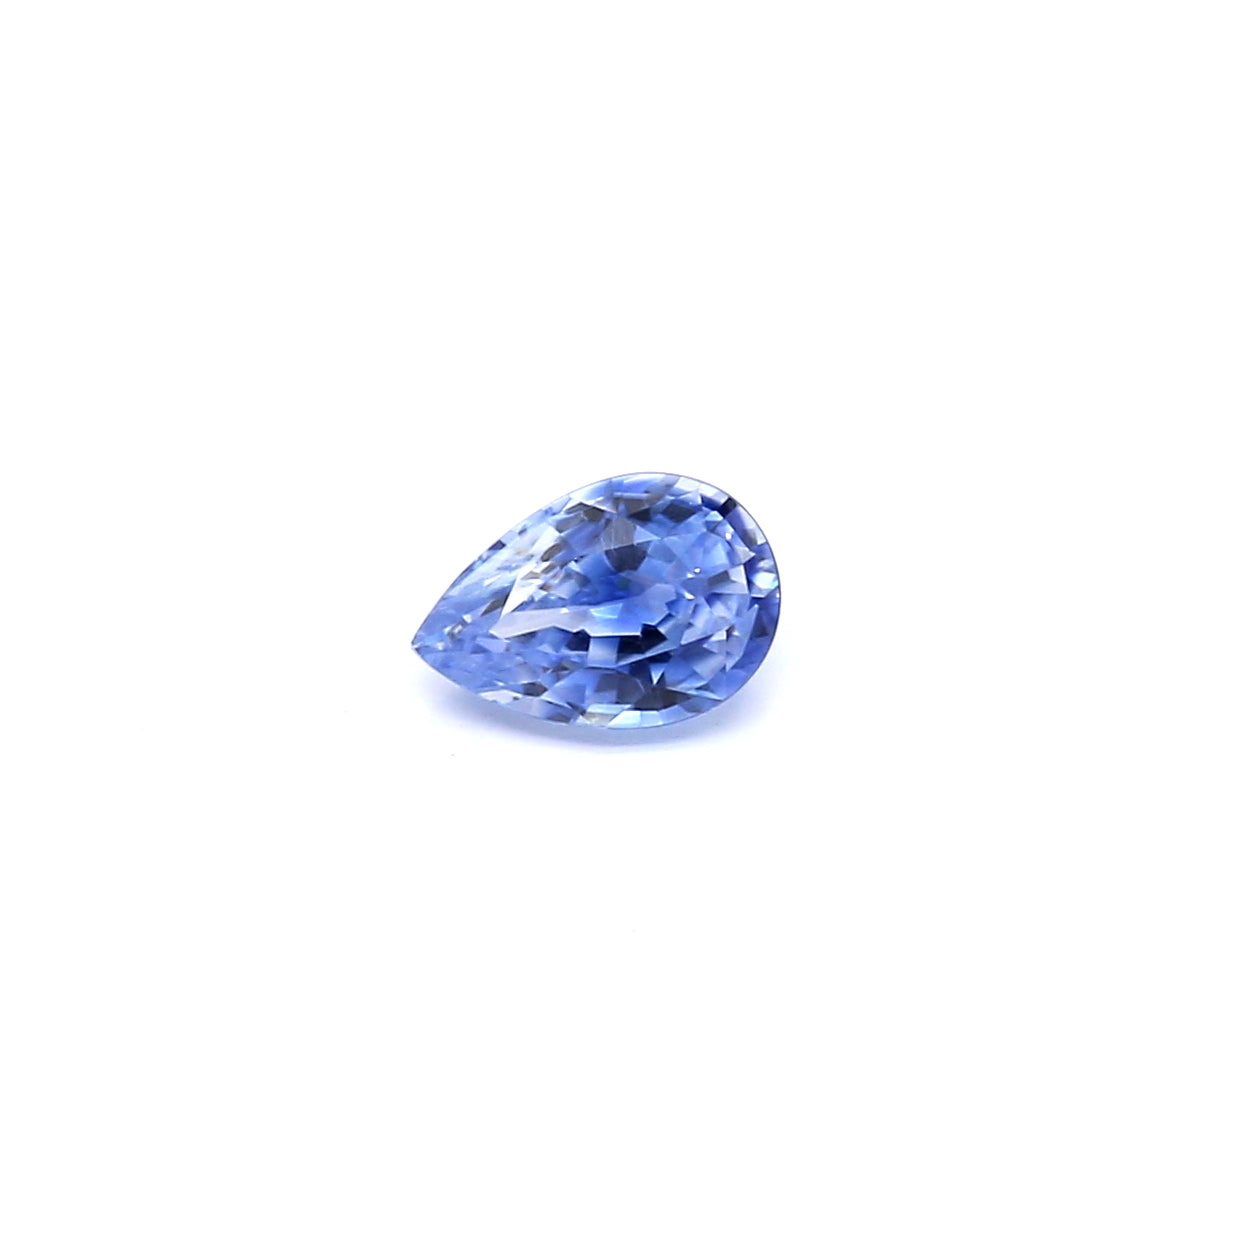 0.71ct Pear Shape Sapphire, Heated, Sri Lanka - 6.55 x 4.43 x 3.18mm